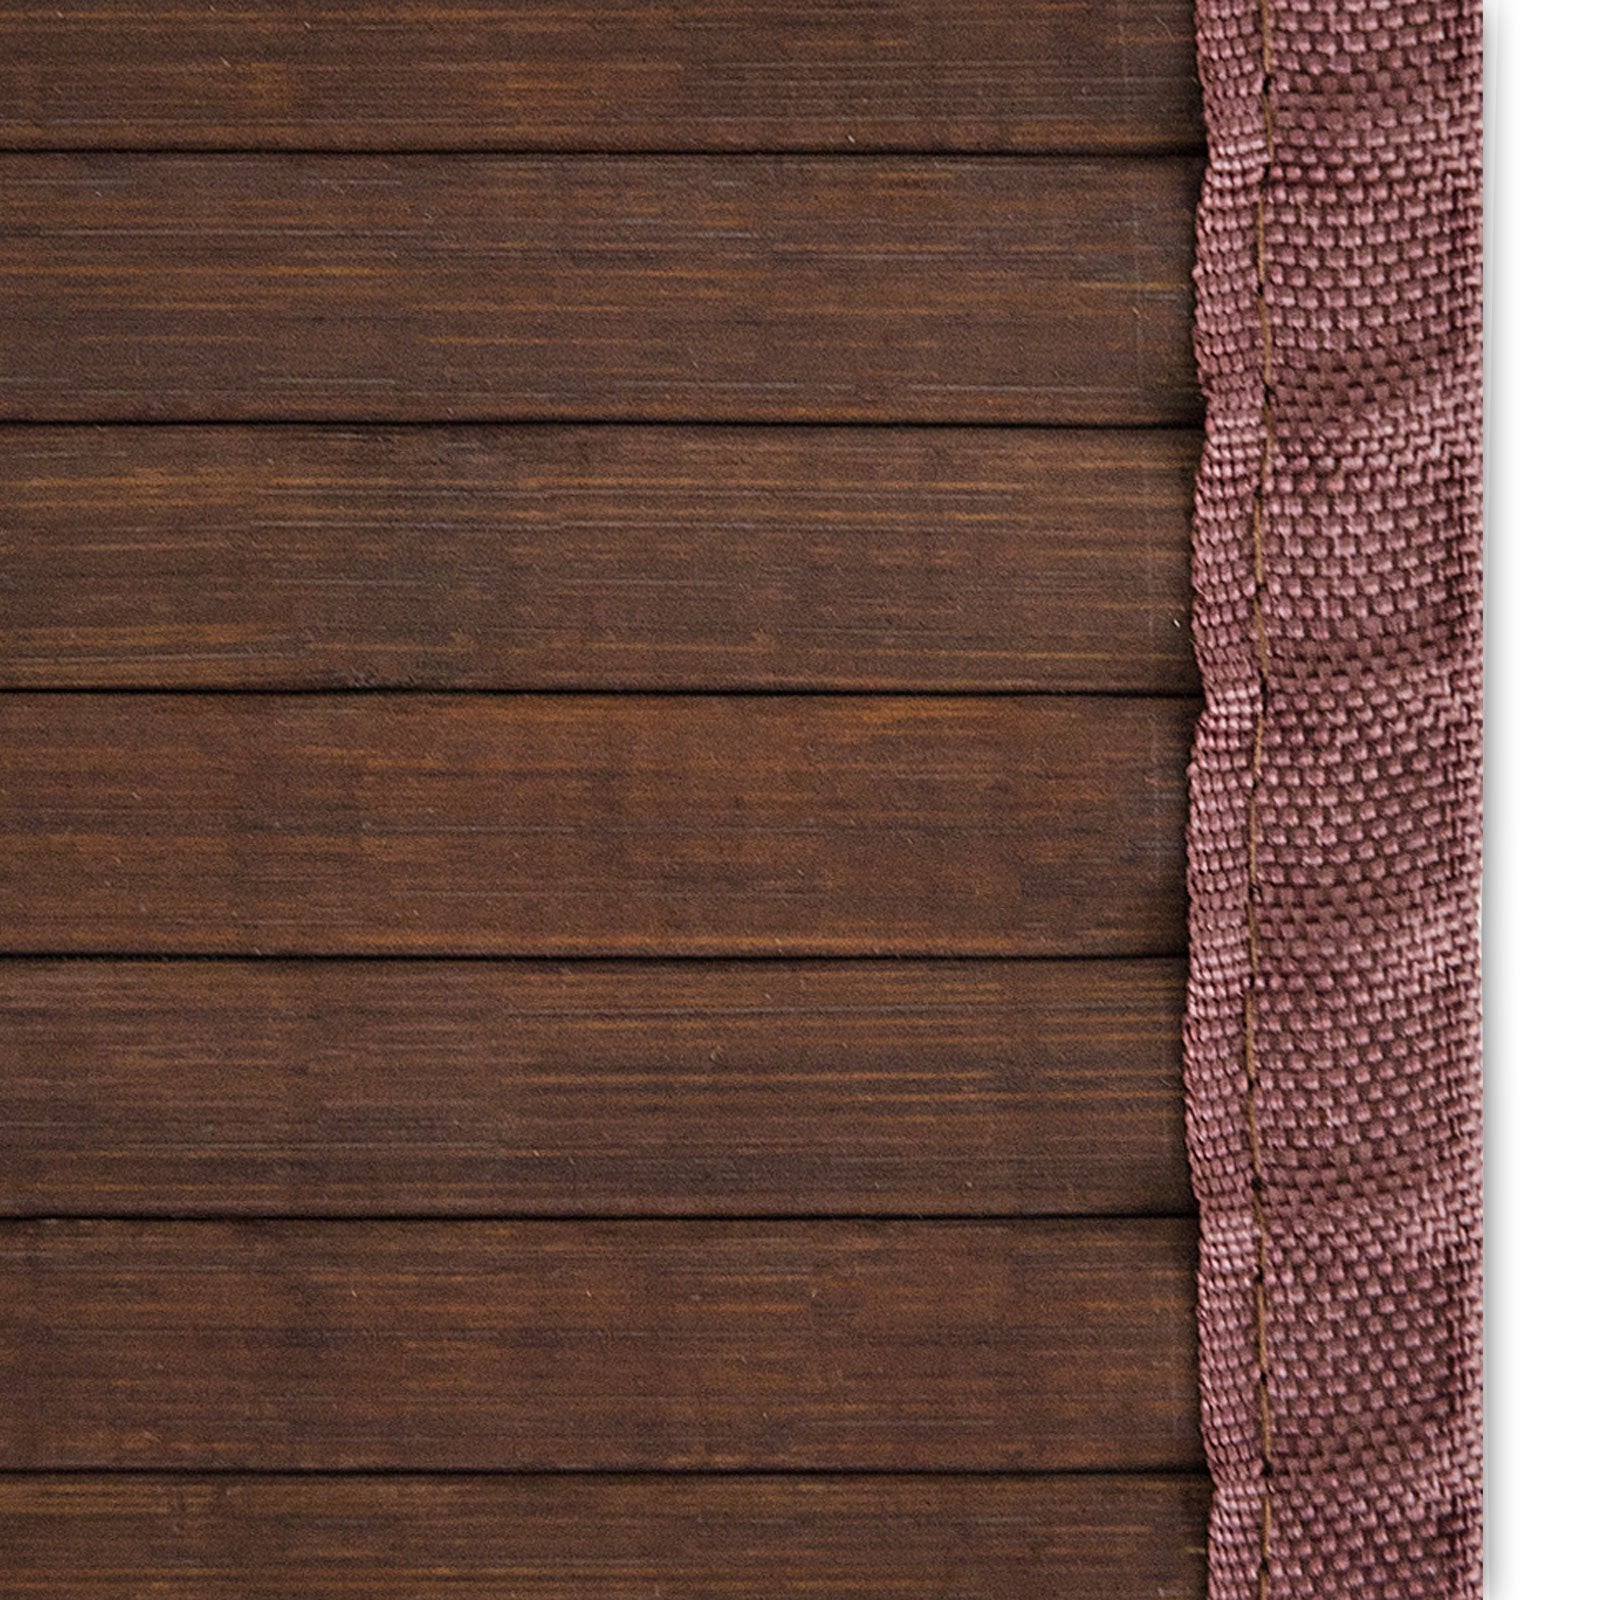 Bambus-Teppich | Oak | Bambusmatte für Bad & Wohnzimmer